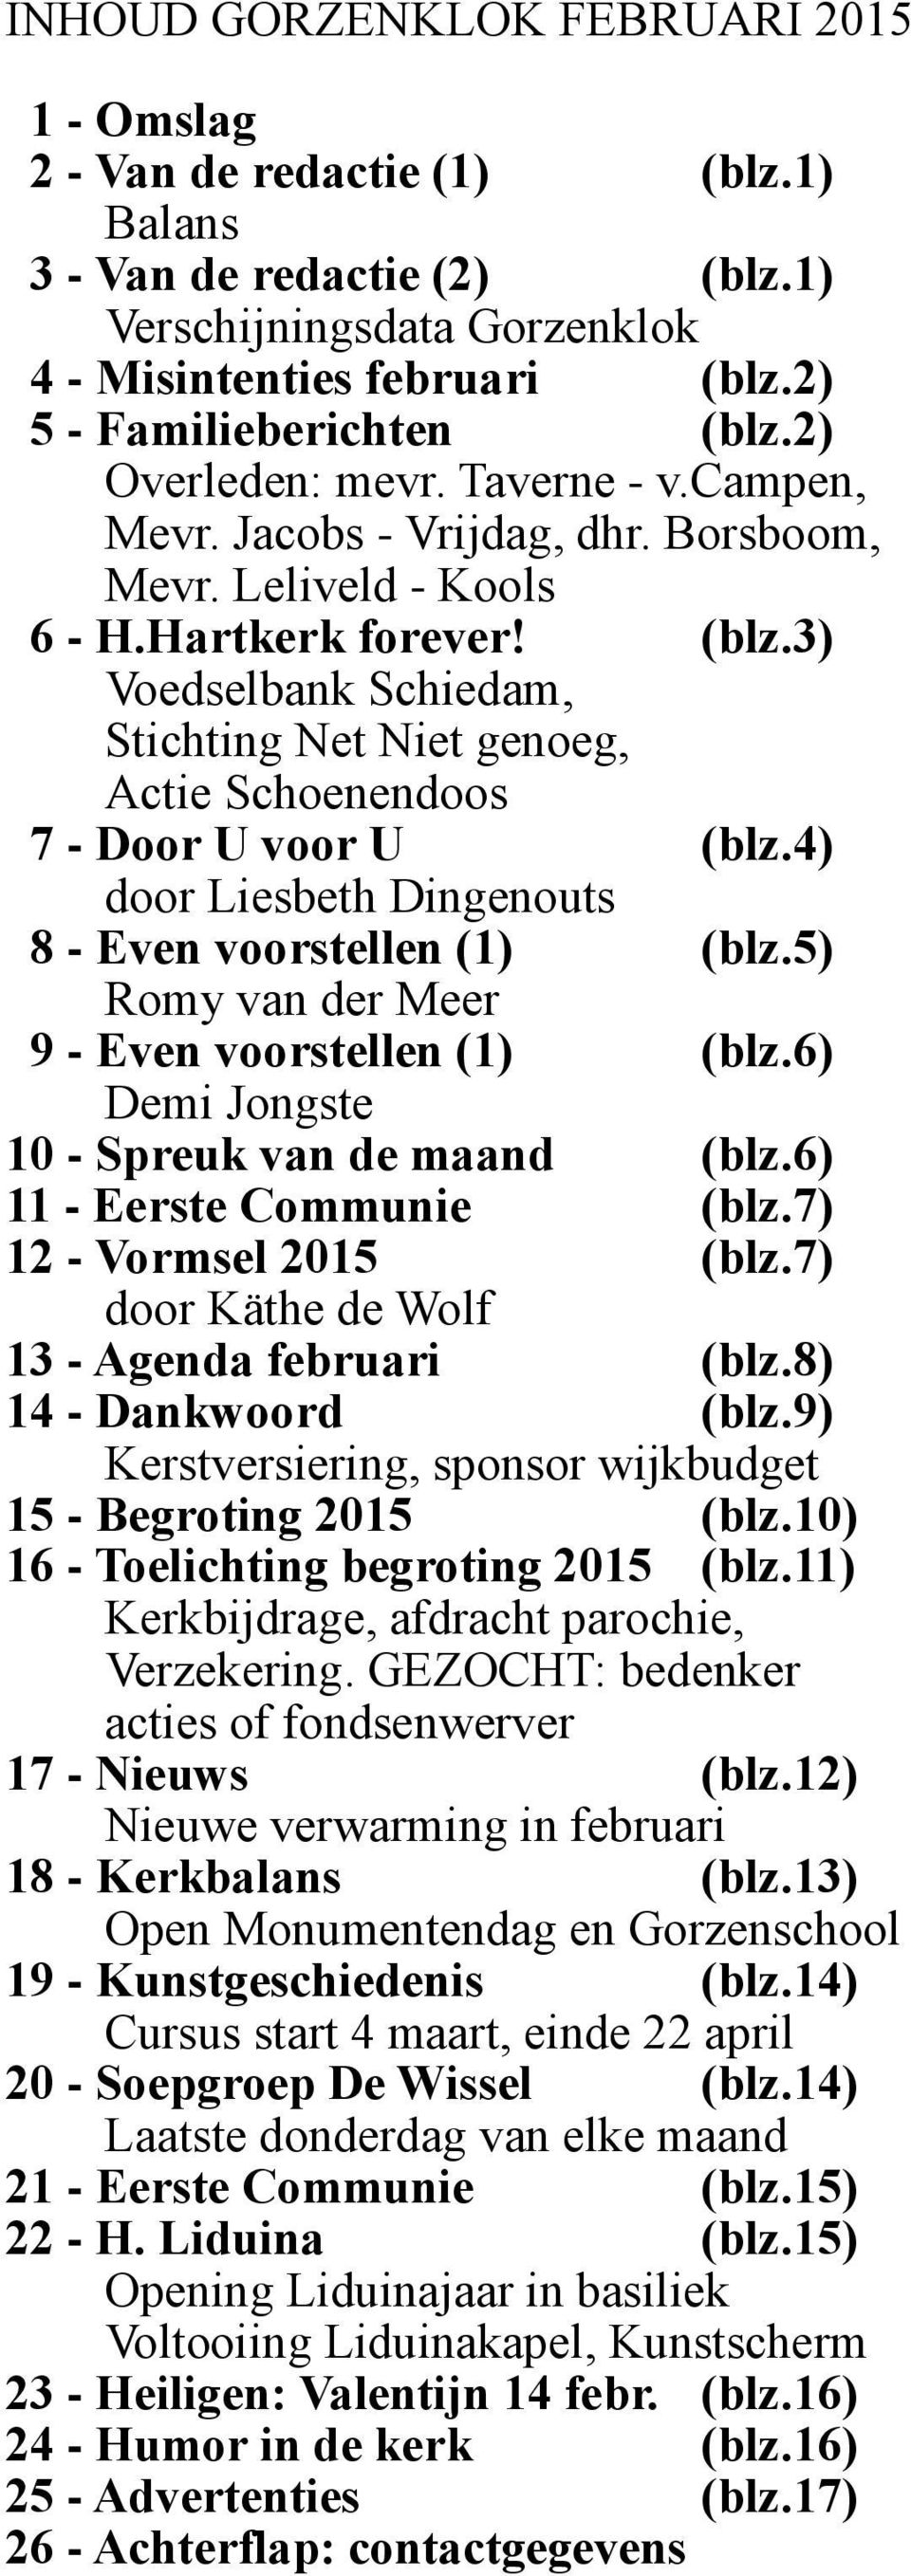 4) door Liesbeth Dingenouts 8 - Even voorstellen (1) (blz.5) Romy van der Meer 9 - Even voorstellen (1) (blz.6) Demi Jongste 10 - Spreuk van de maand (blz.6) 11 - Eerste Communie (blz.